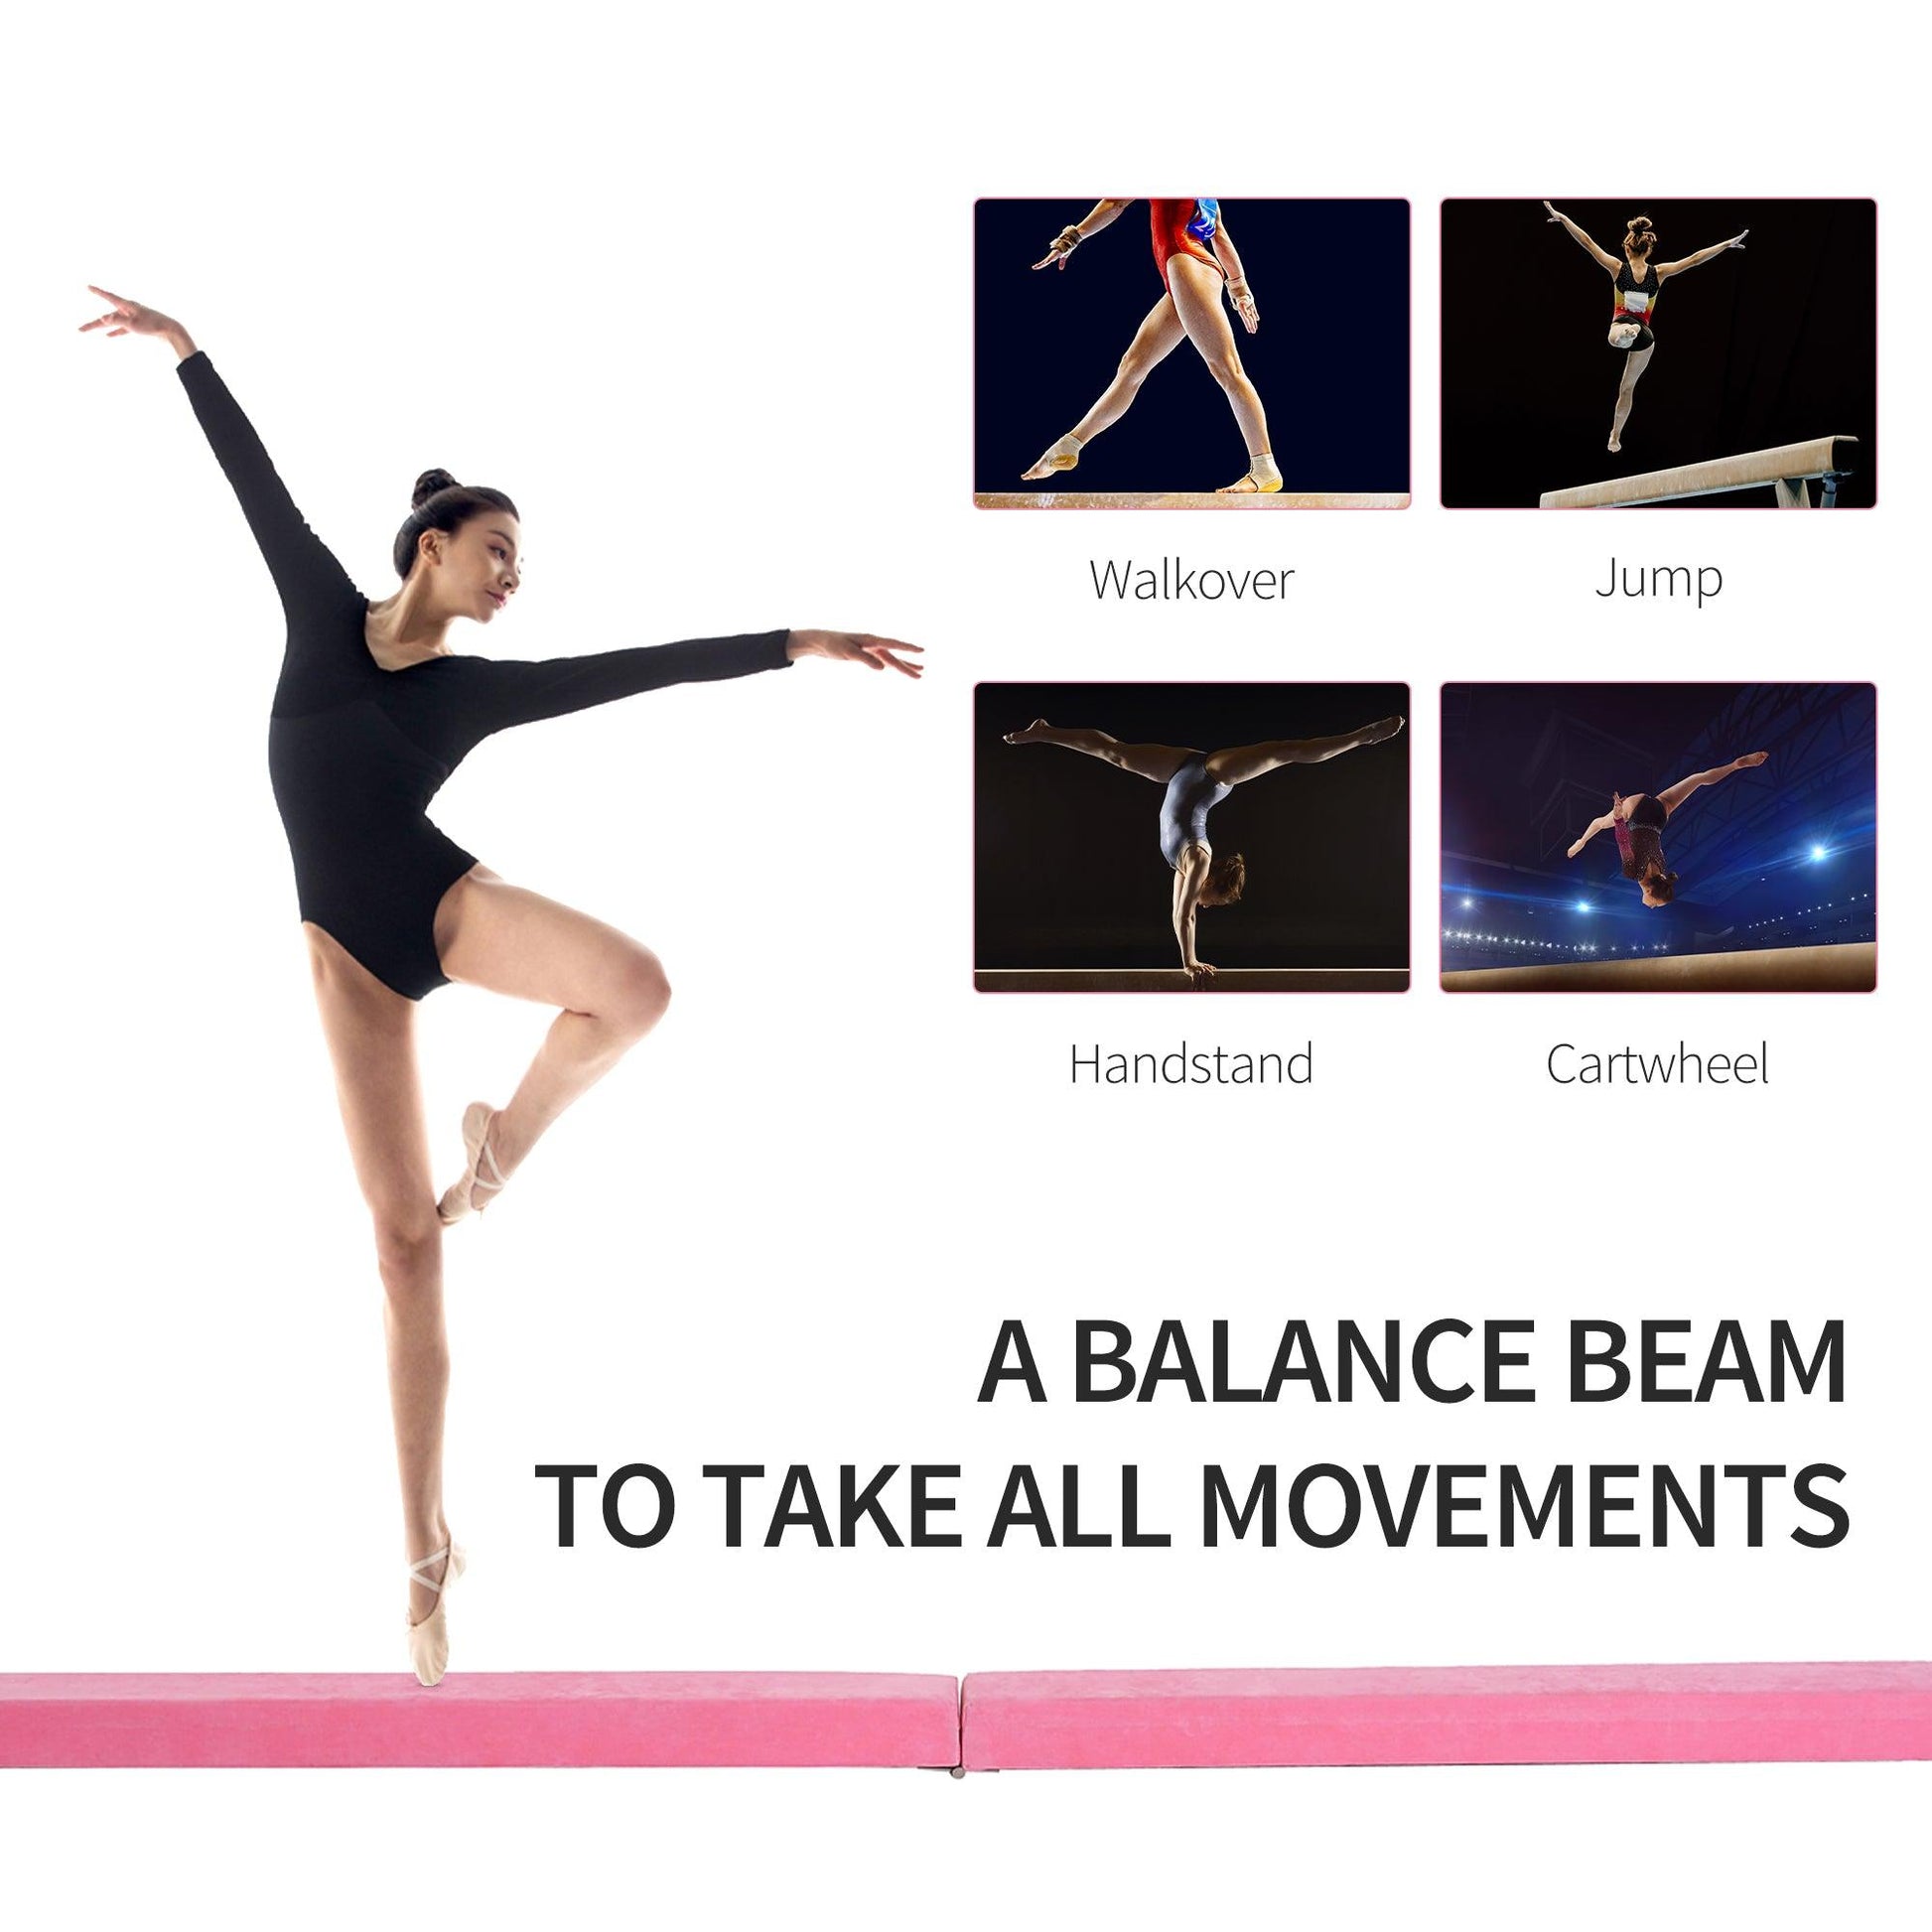 HOMCOM Balance Beam Trainer Fold Performance Gymnastics Suede Pink Home - ALL4U RETAILER LTD